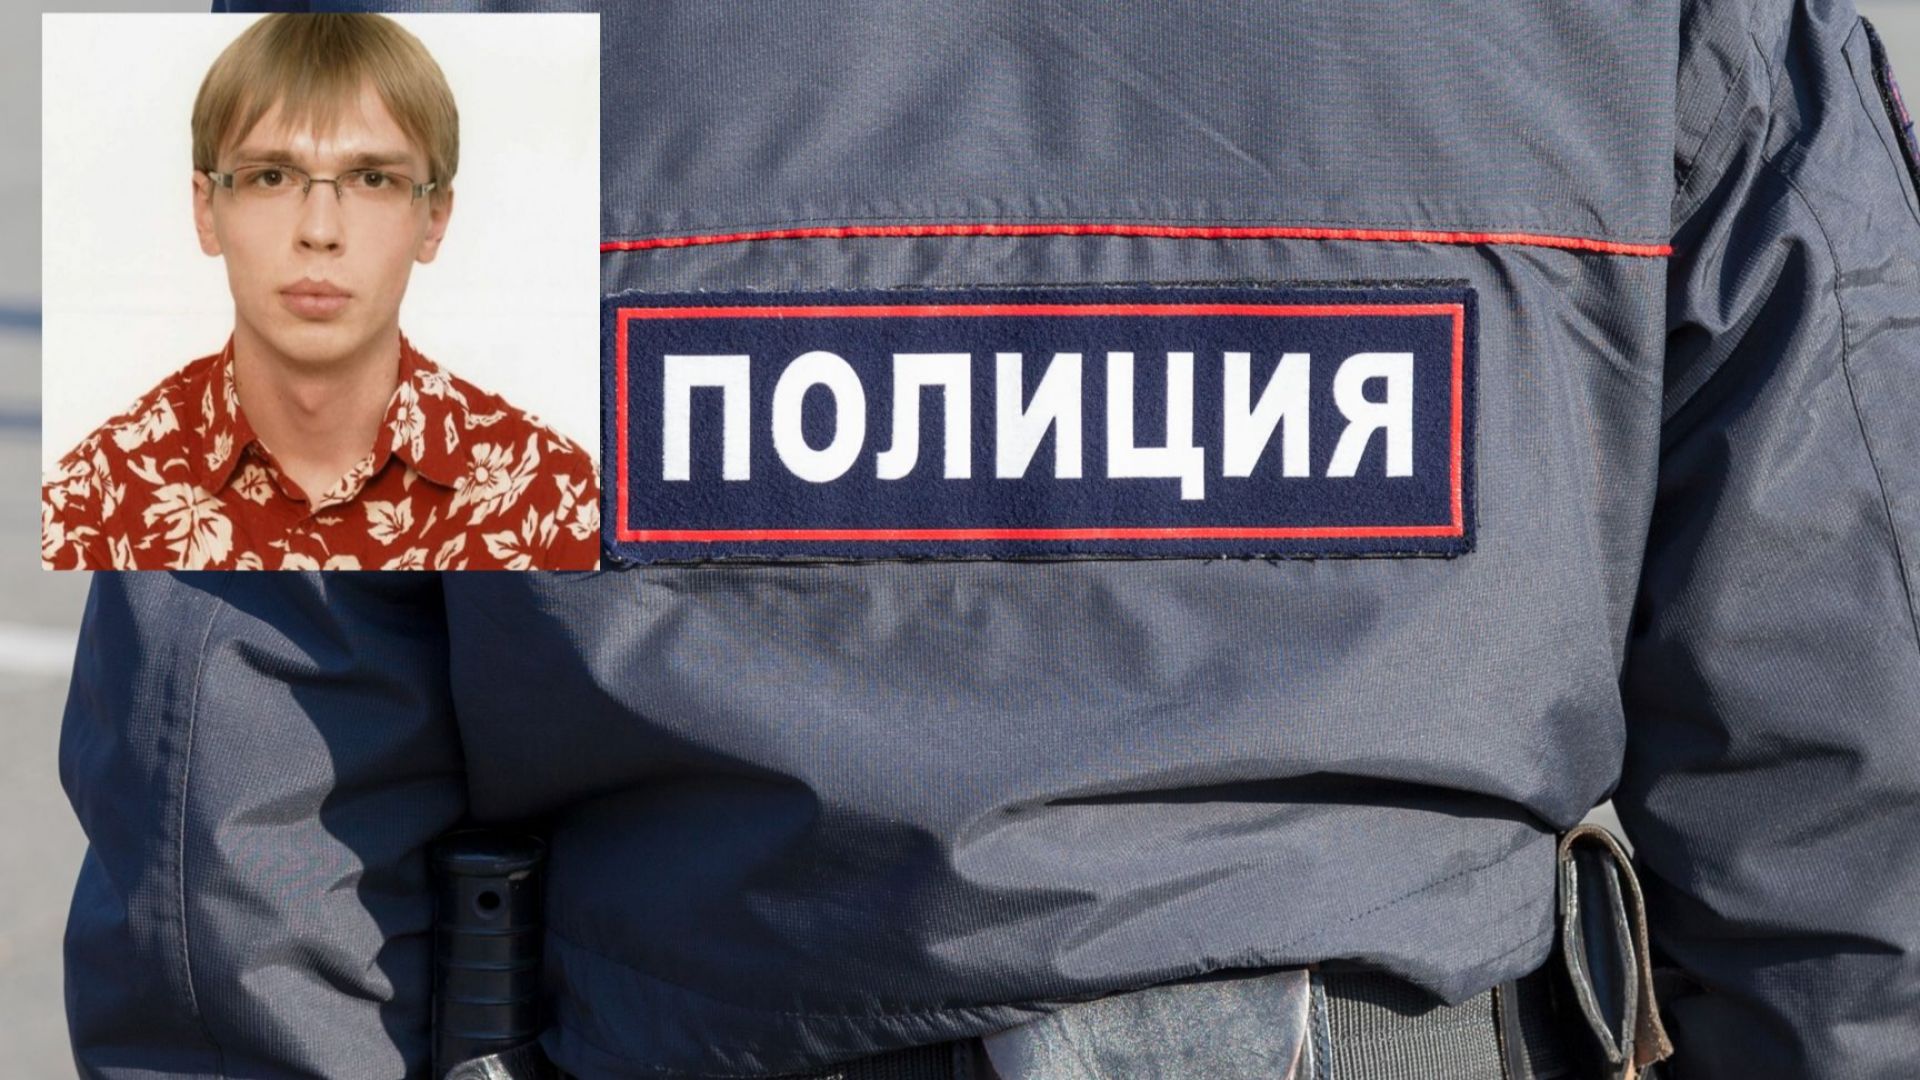 Задържаха руски разследващ журналист с наркотици. Медии и НПО: Нагласен случай